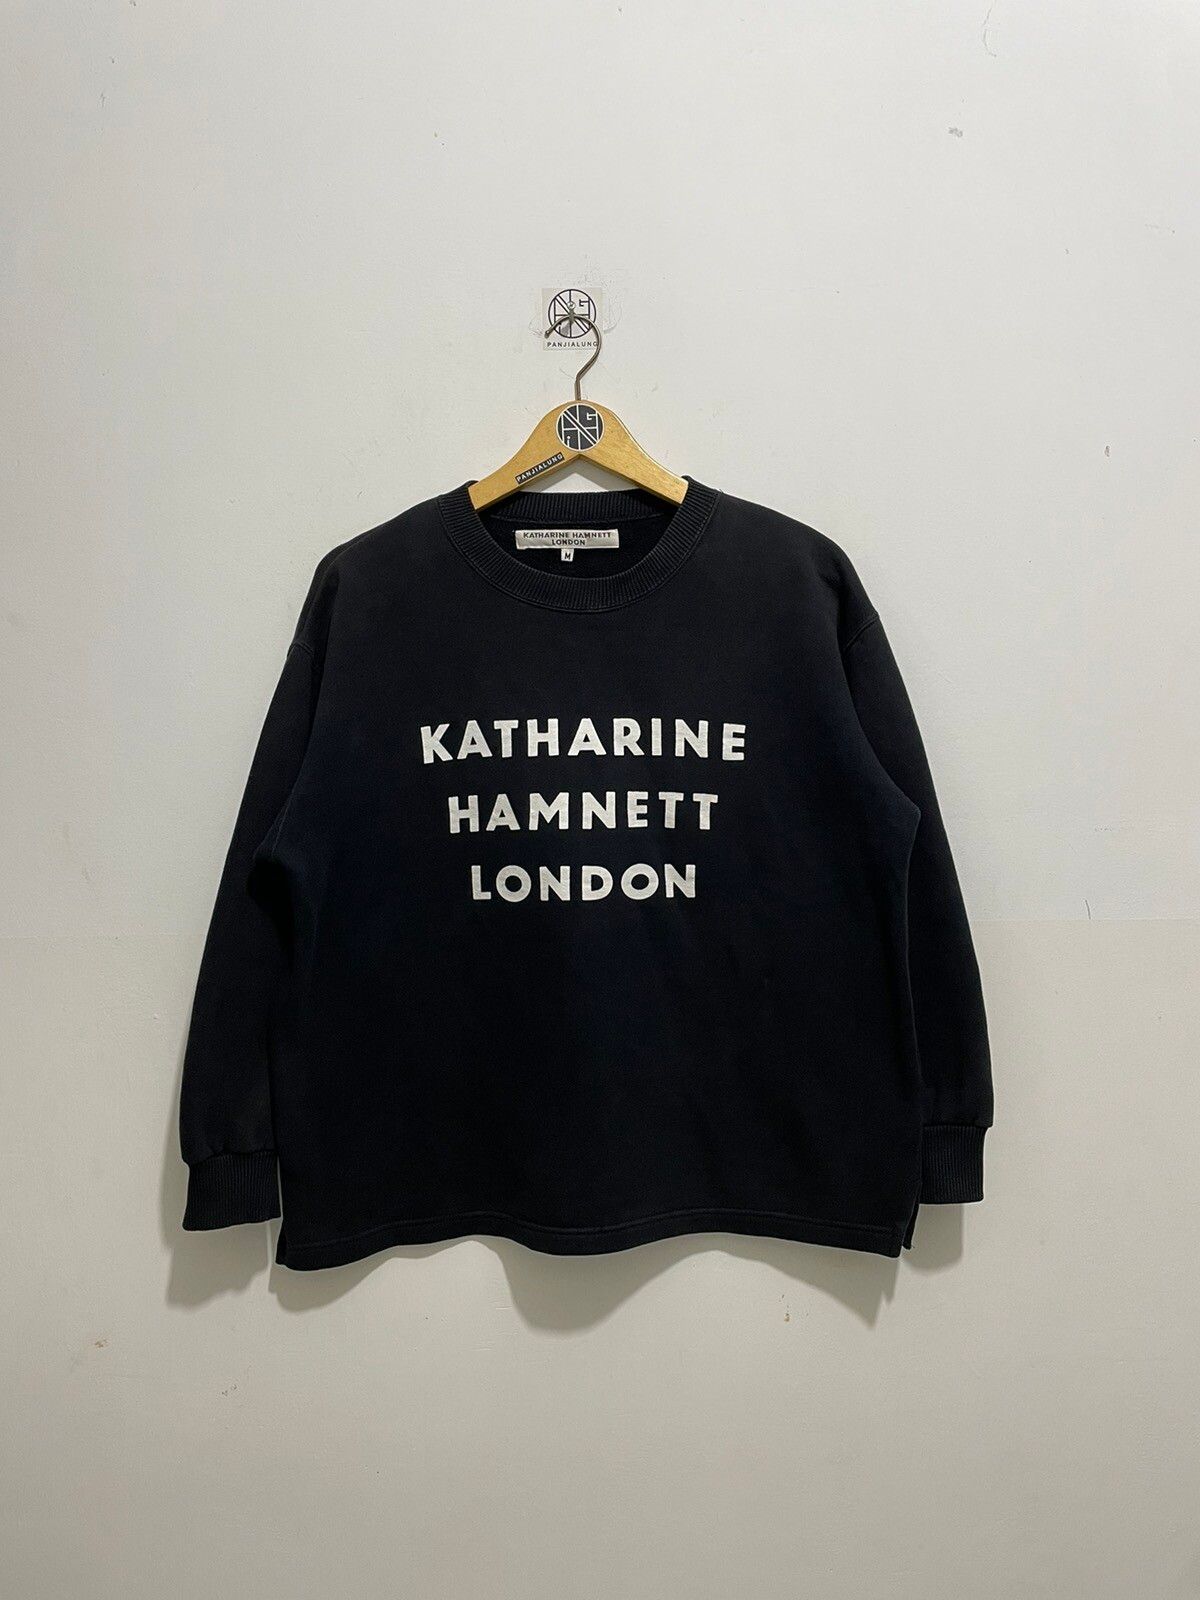 Katharine Hamnett London Vintage Katherine Hamnett London Iconic